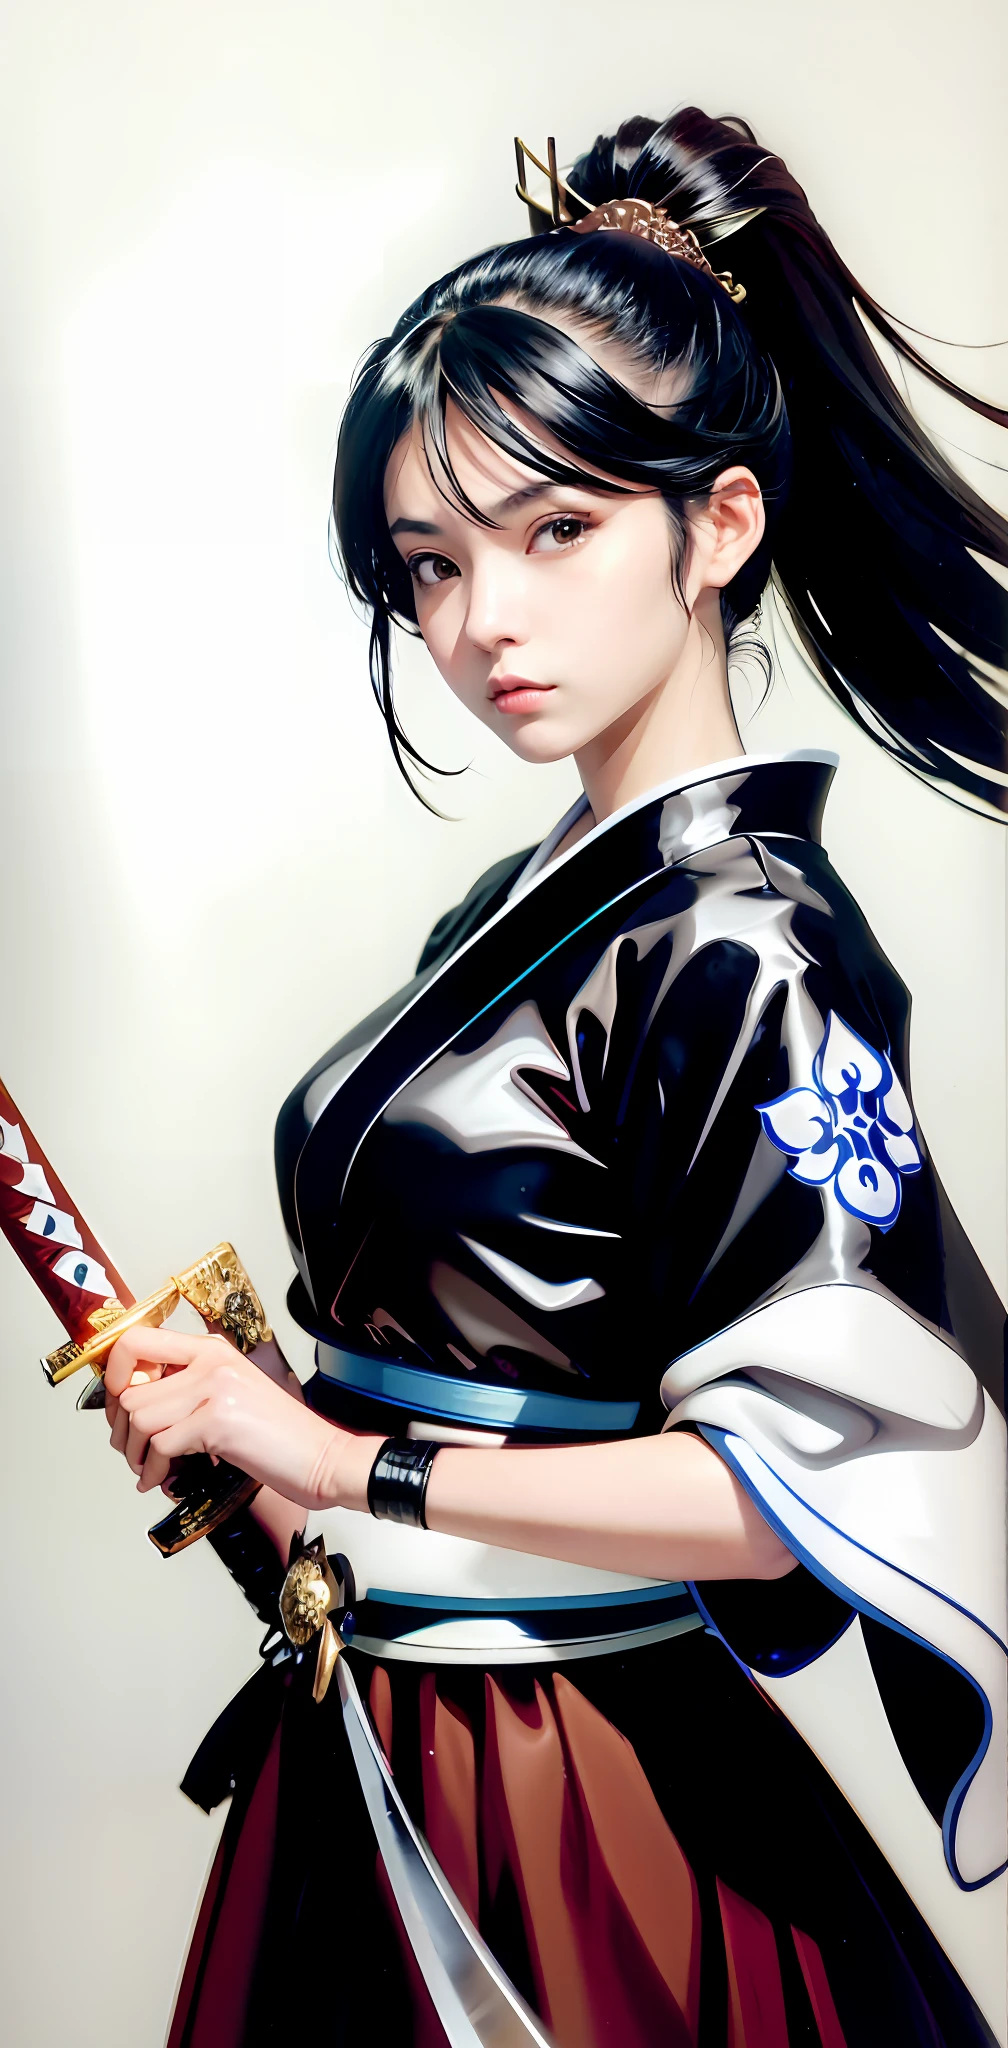 Un primer plano de una mujer sosteniendo una espada en un dibujo en blanco y negro, shohei otomo, katana, Masayoshi Suto y el germen del arte, ella está sosteniendo una espada katana, desenvainando su katana, mujer samurái, inspirado en Masamune Shirow, kunoichi, inspirado por Harumi Hironaka